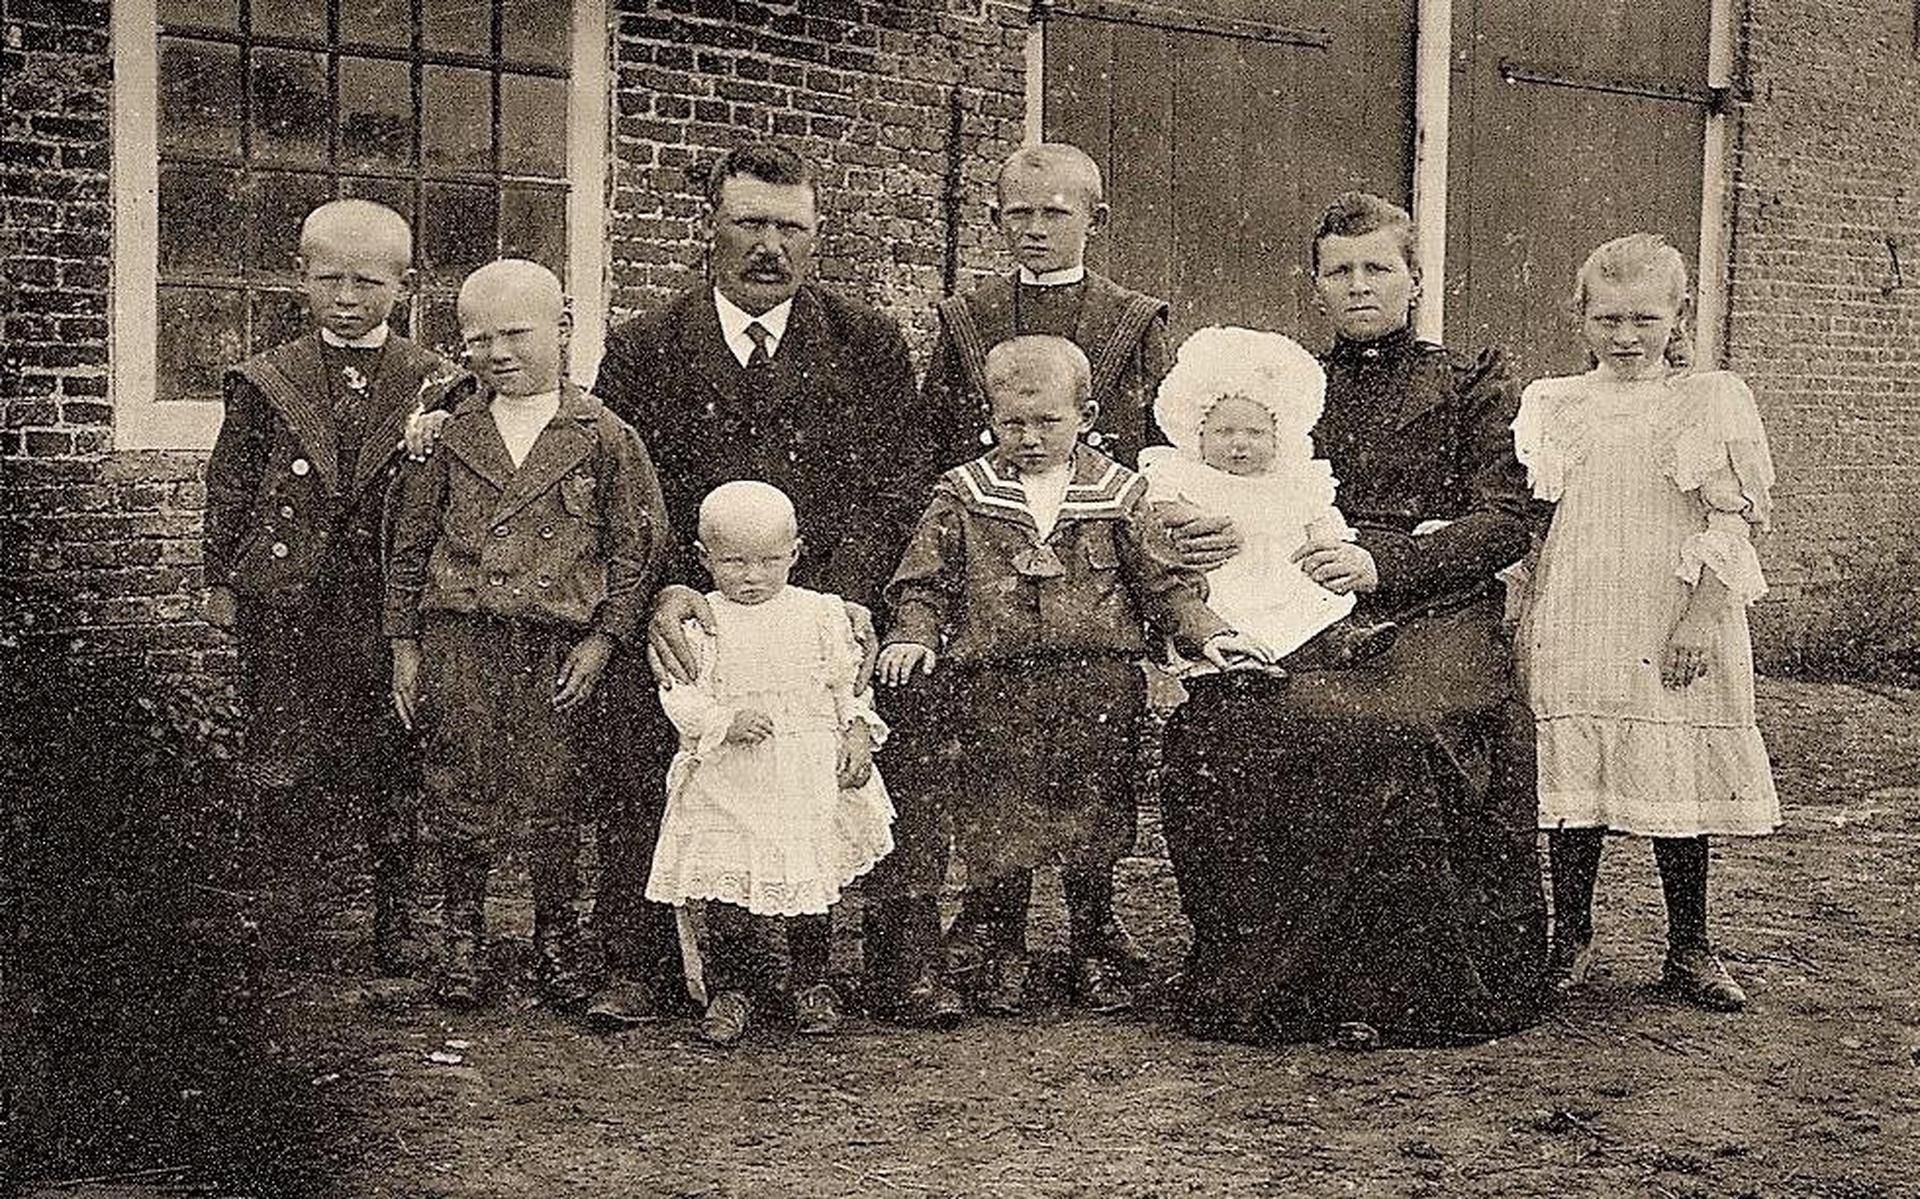 Jelle Martens van Sinderen (1875-1949) met gezin, boerderij aan de Wjuk, Ternaard 1907.